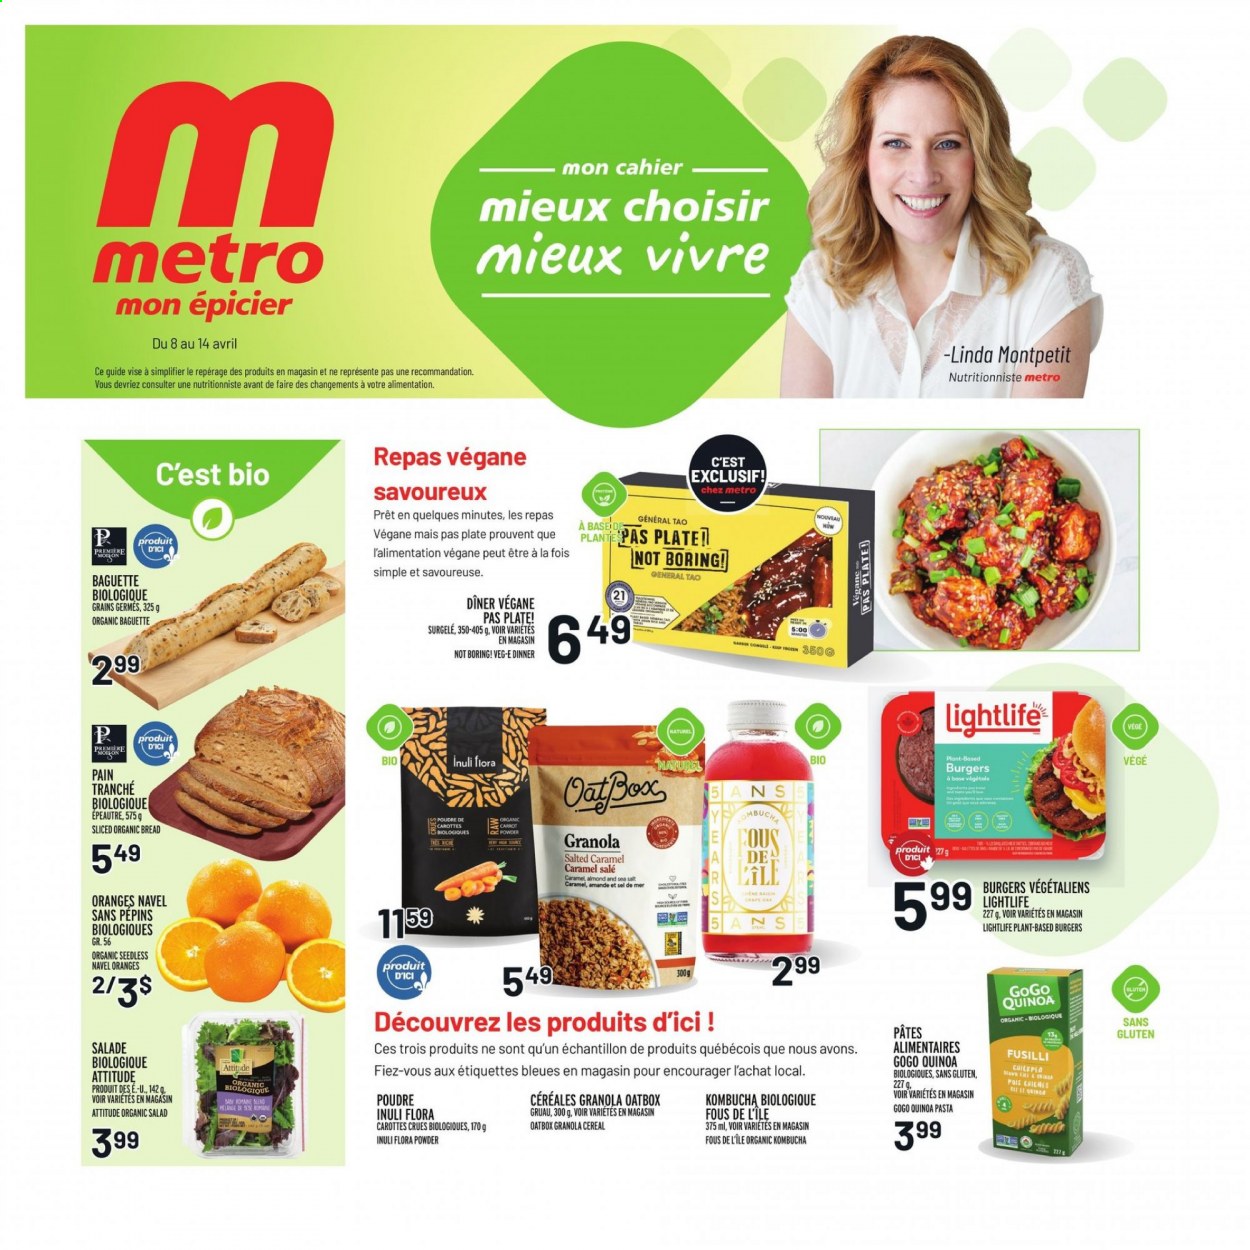 thumbnail - Metro Flyer - April 08, 2021 - April 14, 2021 - Sales products - bread, salad, navel oranges, hamburger, pasta, Flora, cereals, kombucha, plate, PREMIERE, granola, quinoa. Page 1.